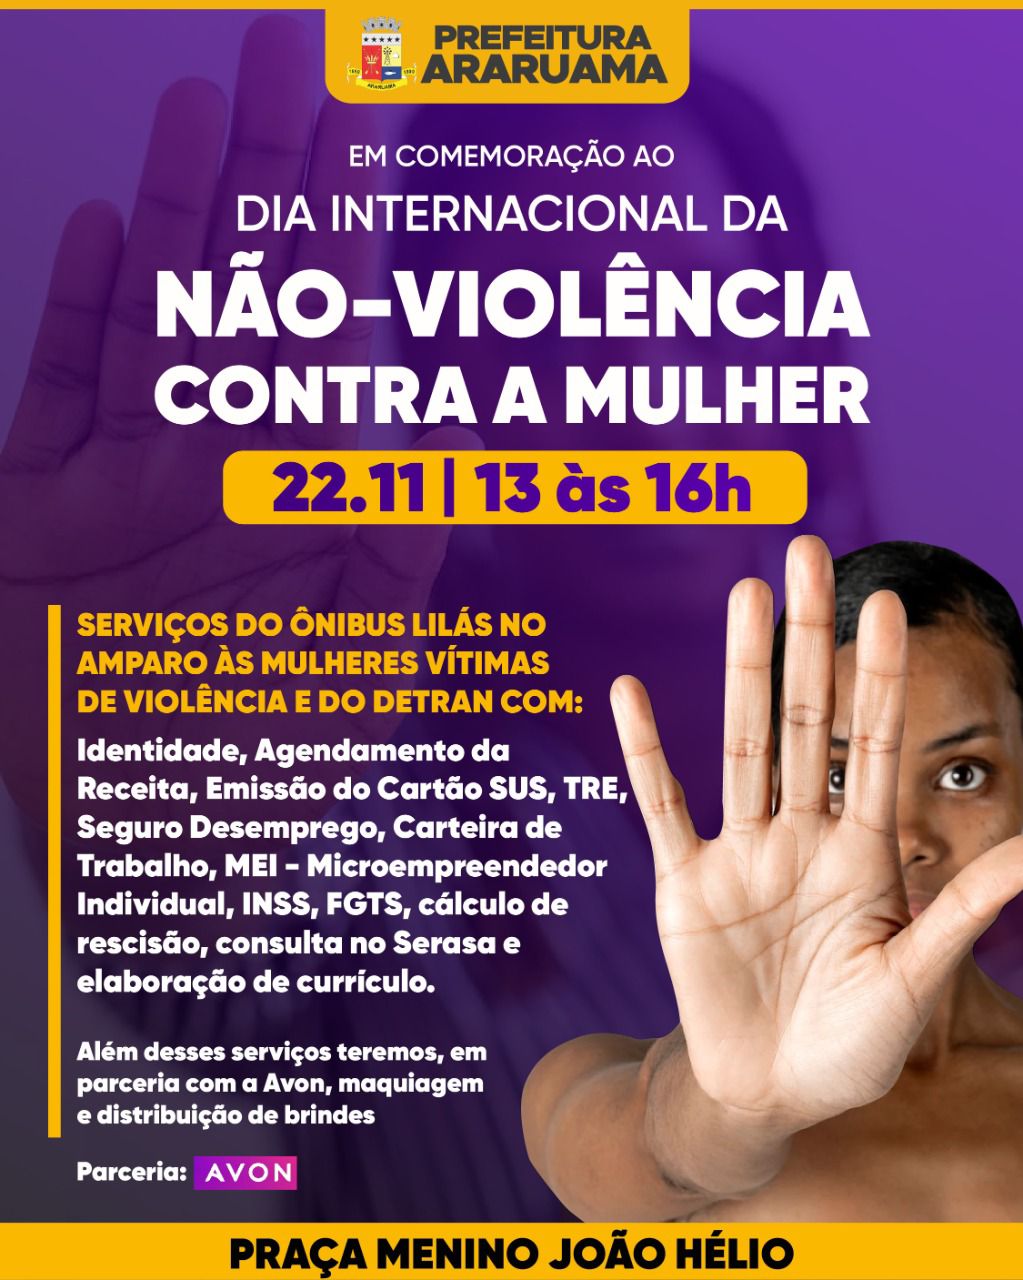 Dia Internacional da Não-Violência contra a mulher será marcado em Araruama com várias prestações de serviços